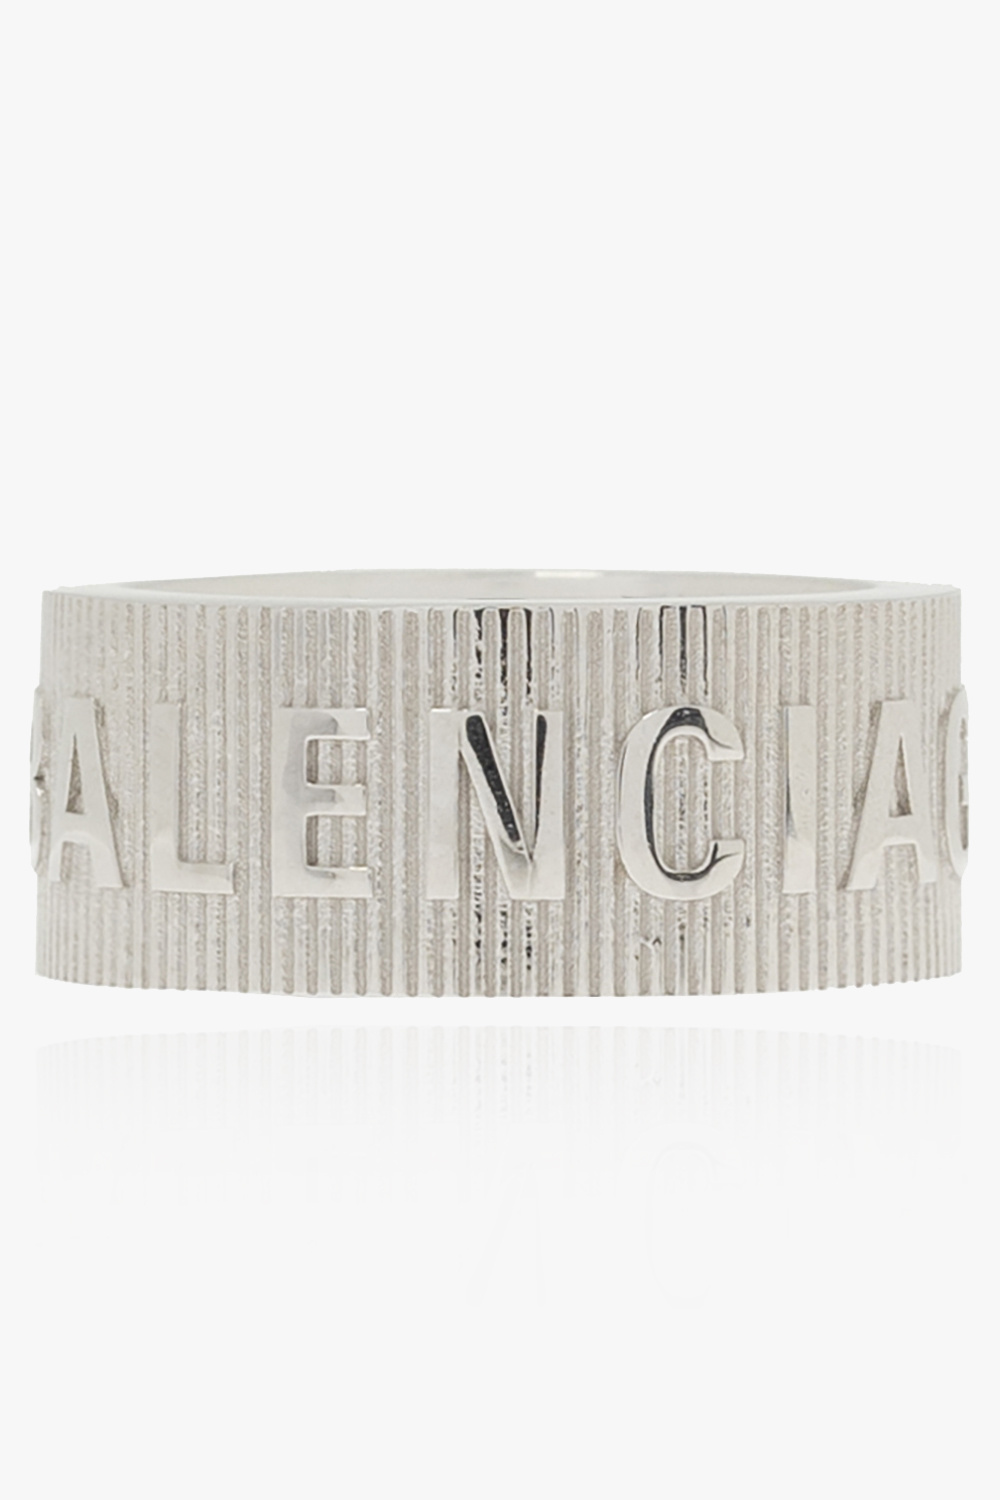 Balenciaga Ring with logo